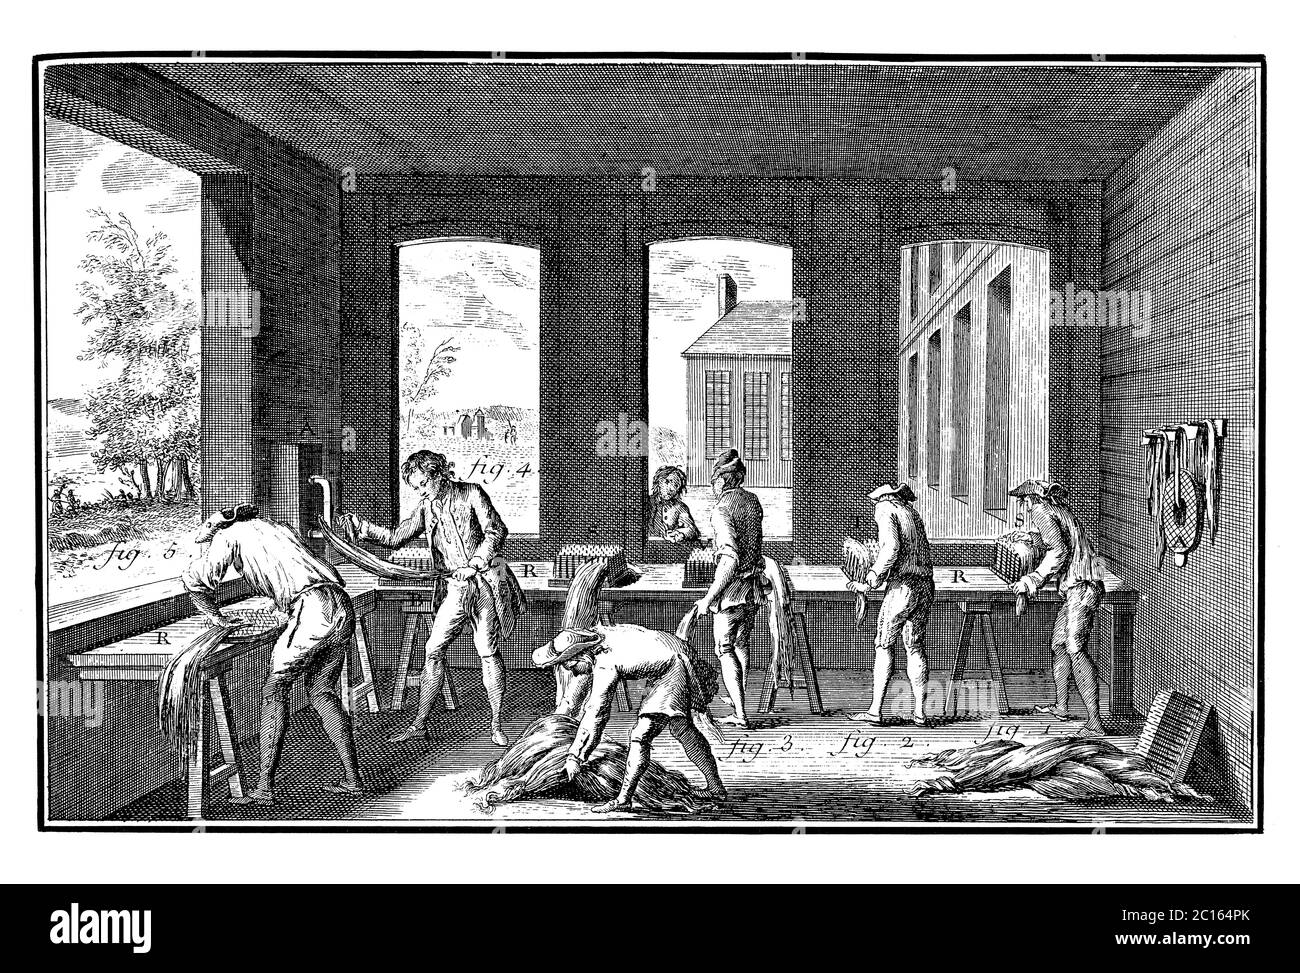 18. Jahrhundert Illustration der Herstellung von Hanf oder industriellem Cannabis für verschiedene. Veröffentlicht in „A Diderot Pictorial Encyclopedia of Trades and Industry Stockfoto